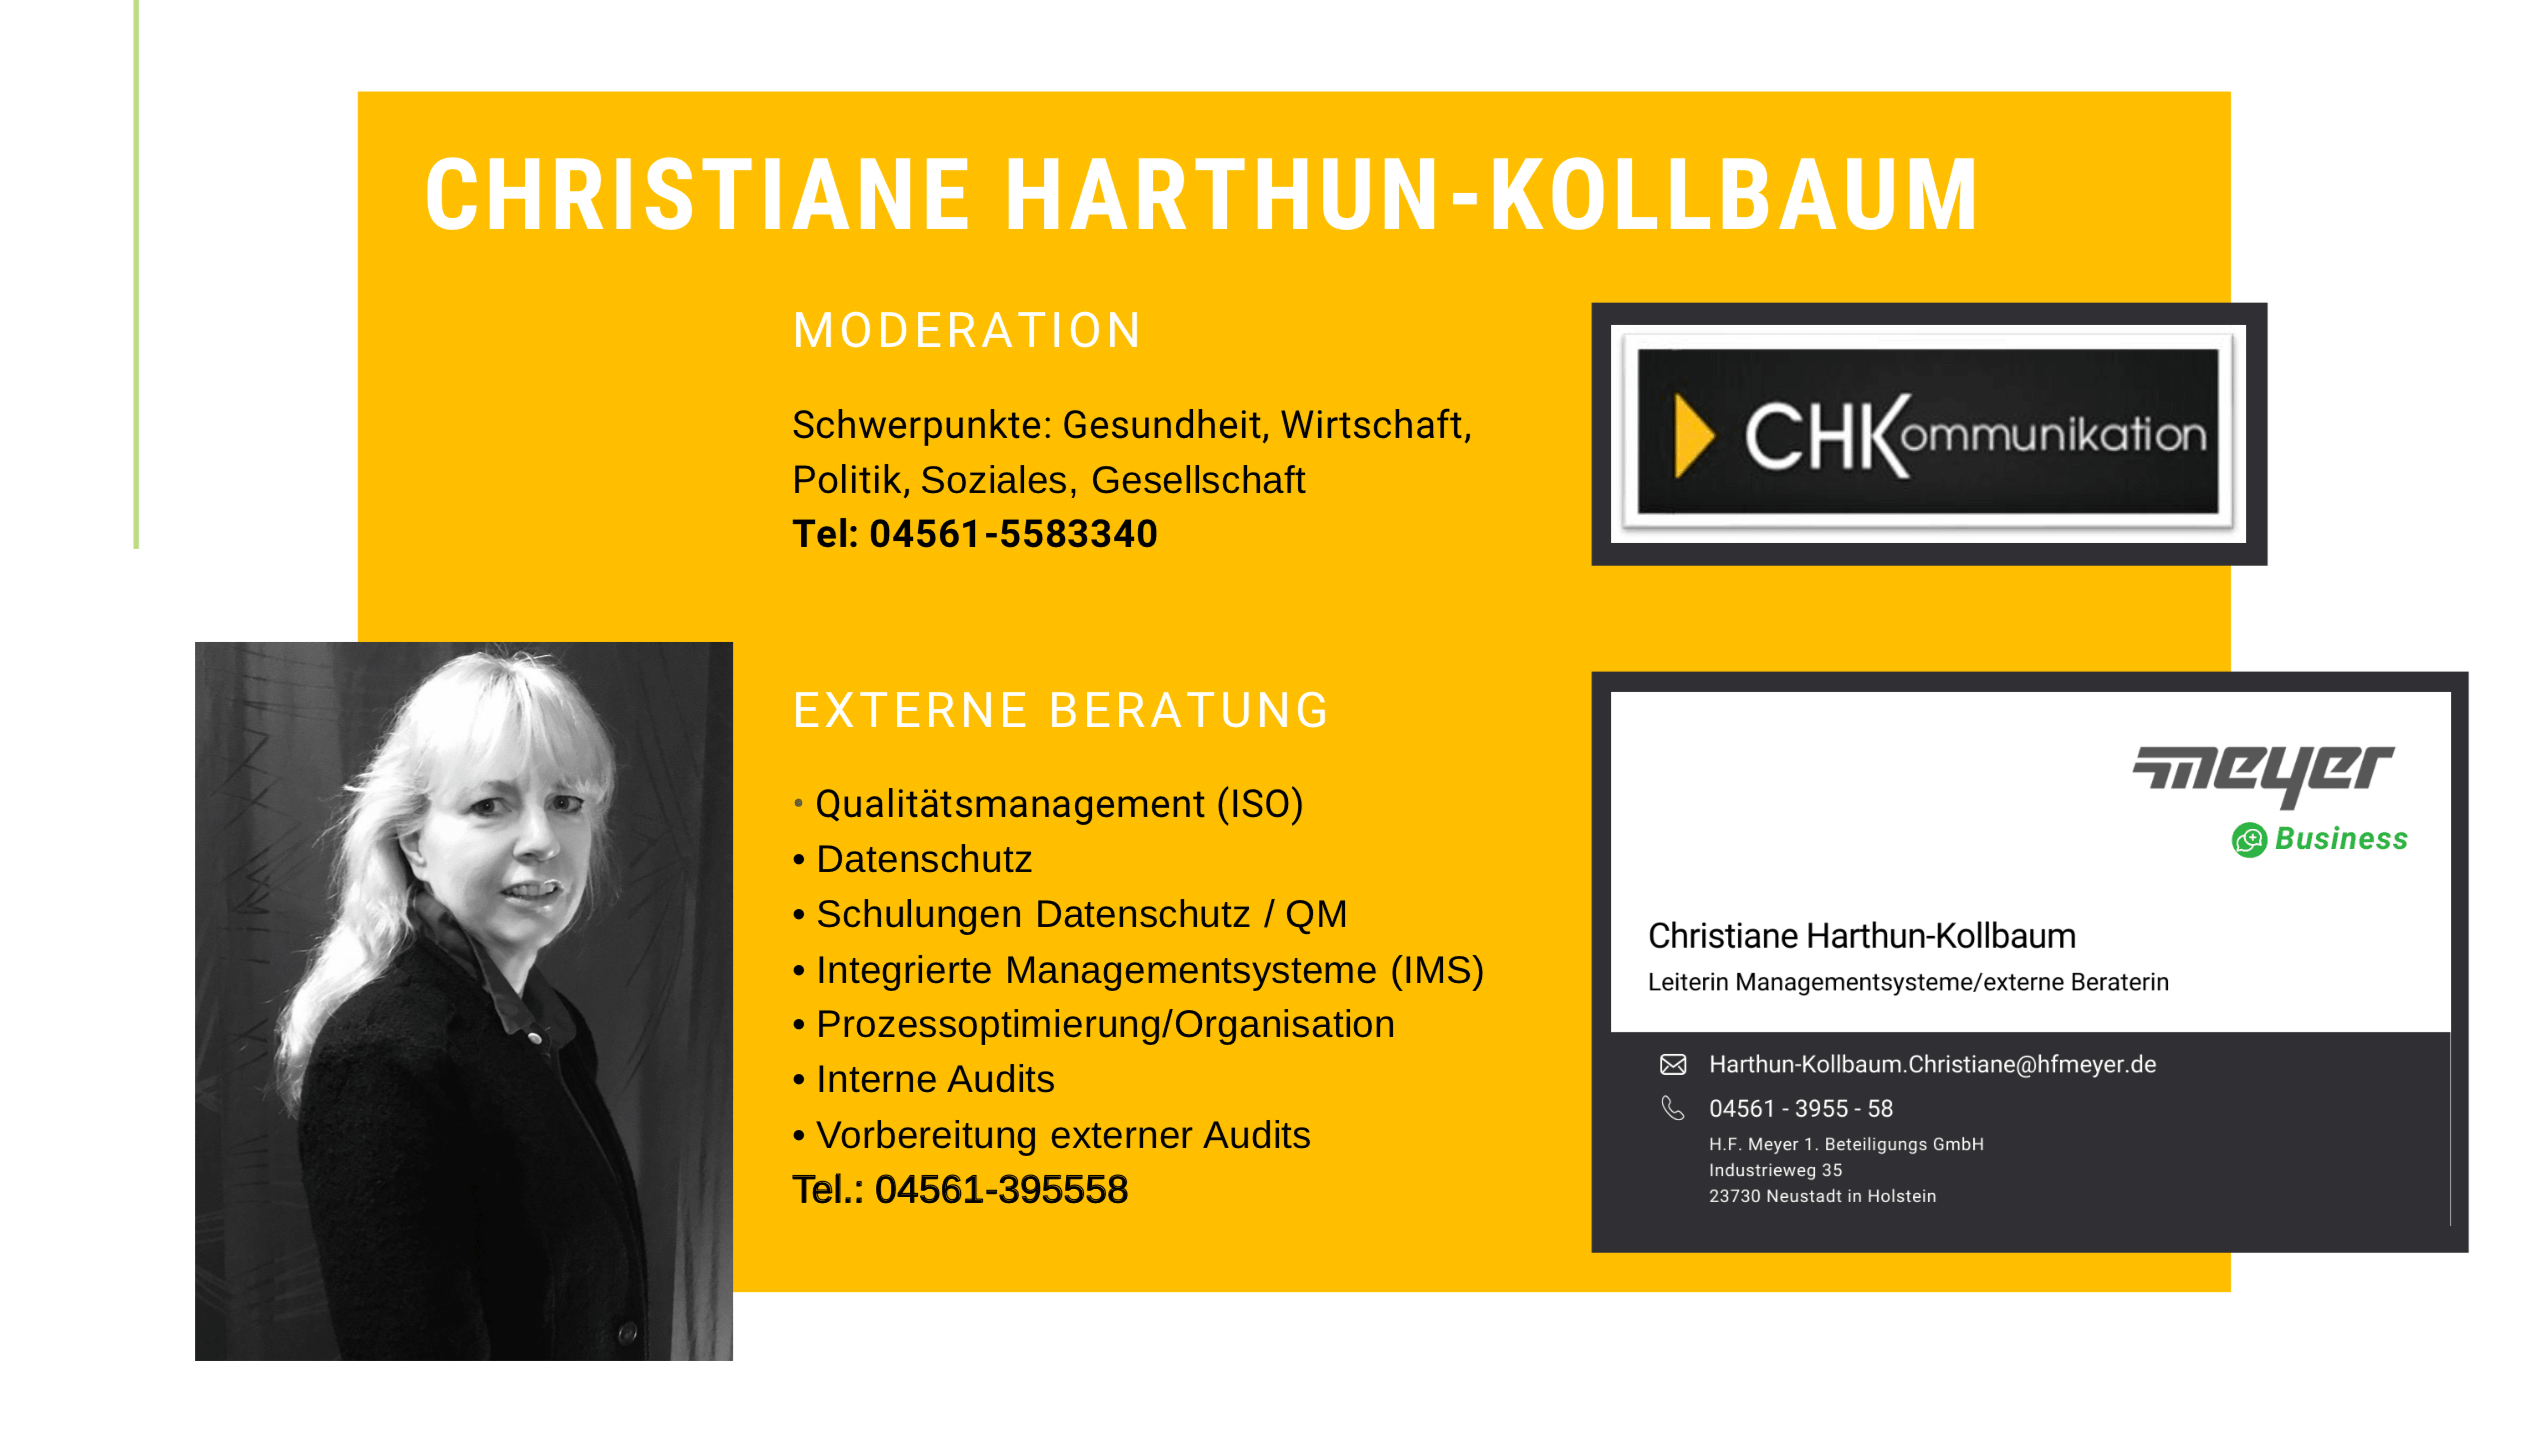 Visitenkarte von Christiane Harthun-Kollbaum, CHKommunikation, Leiterin Qualitätsmanagement H. F. Meyer GmbH & Co. KG